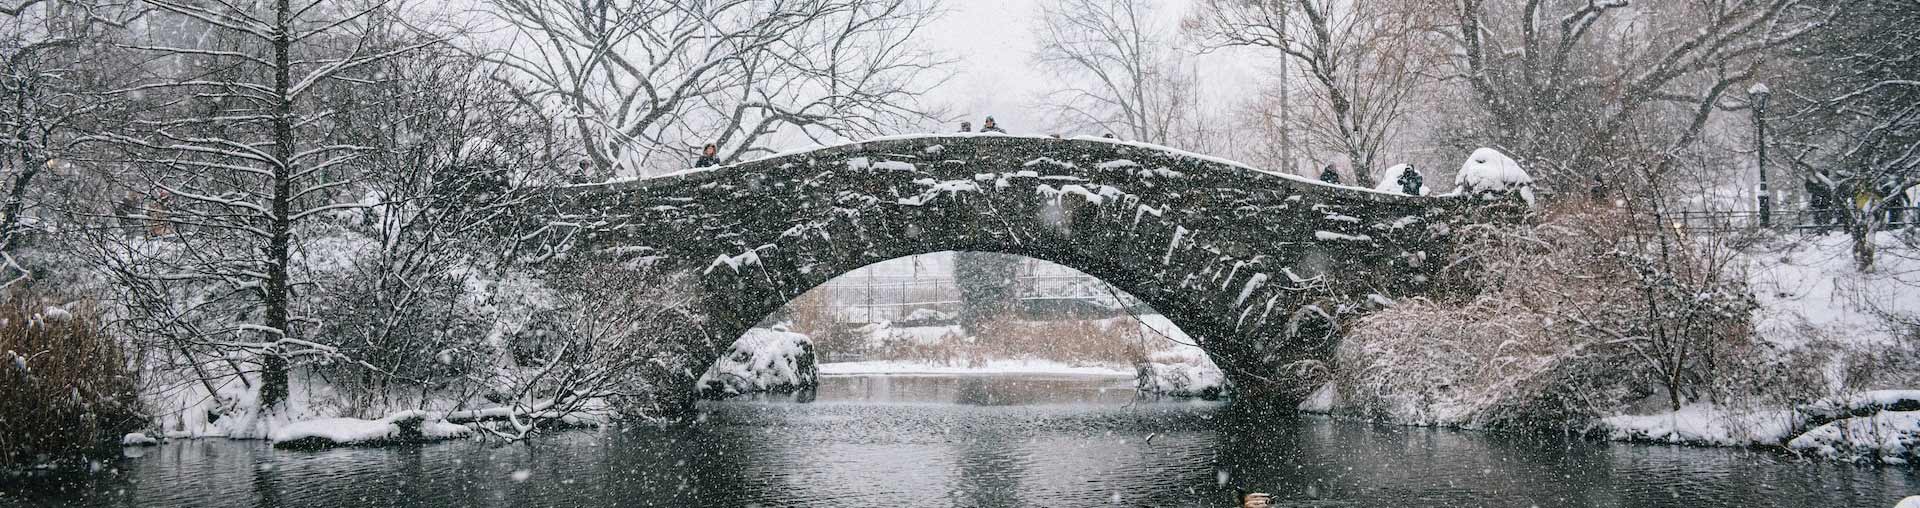 Central Park New York City nevar com ponte de pedra no fundo